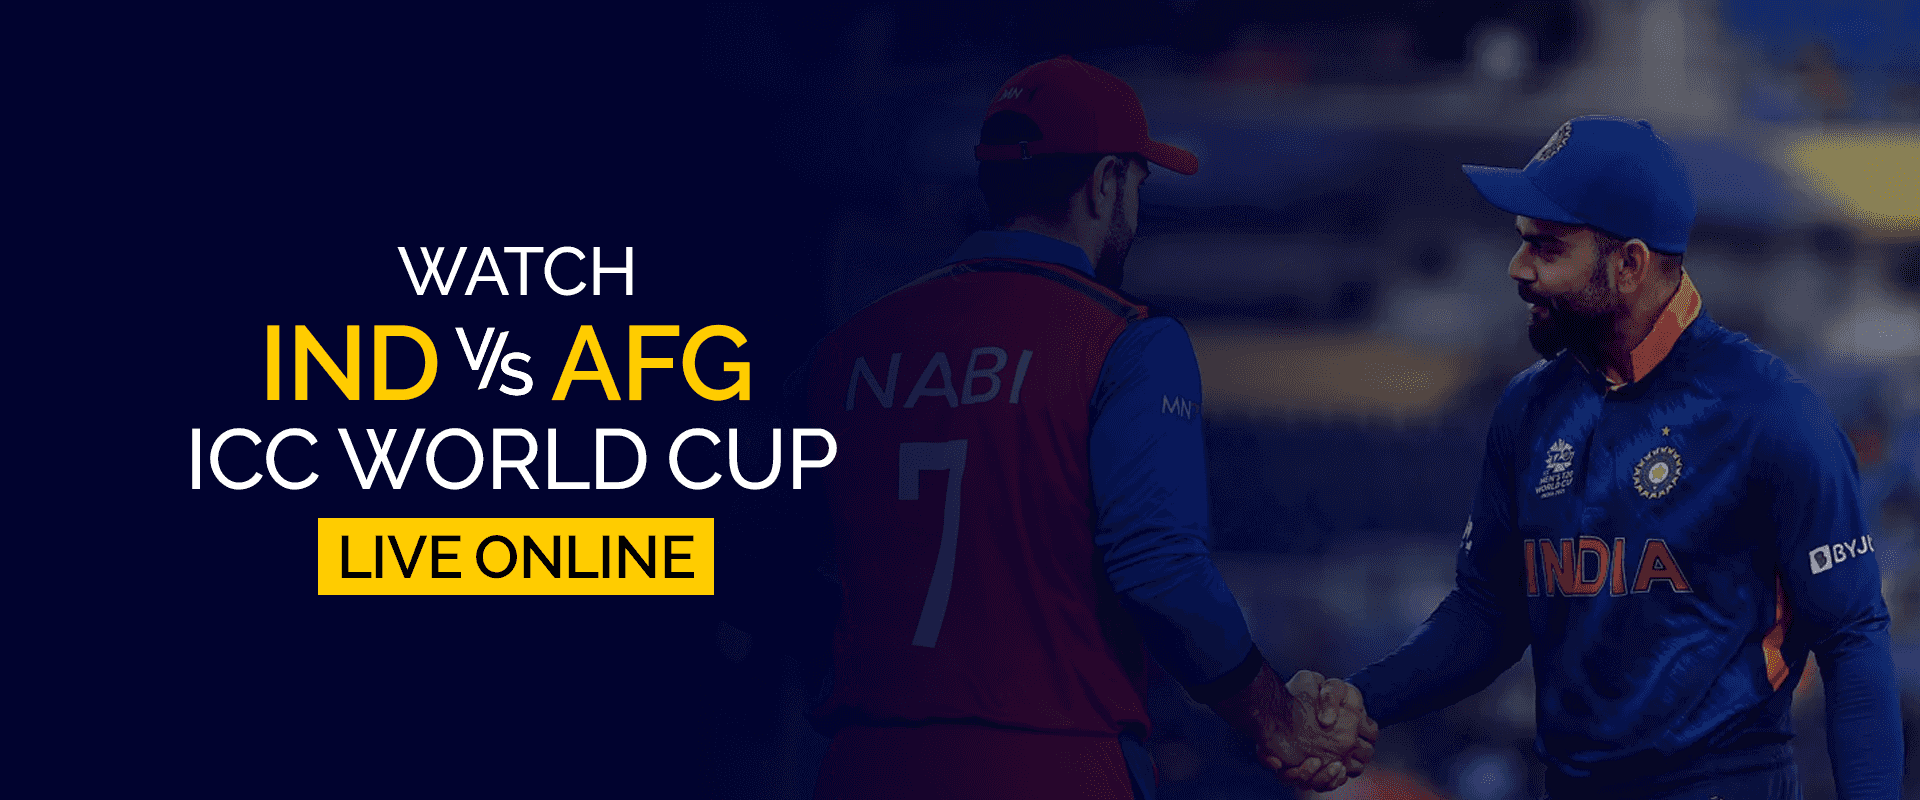 Se IND vs AFG ICC World Cup live online